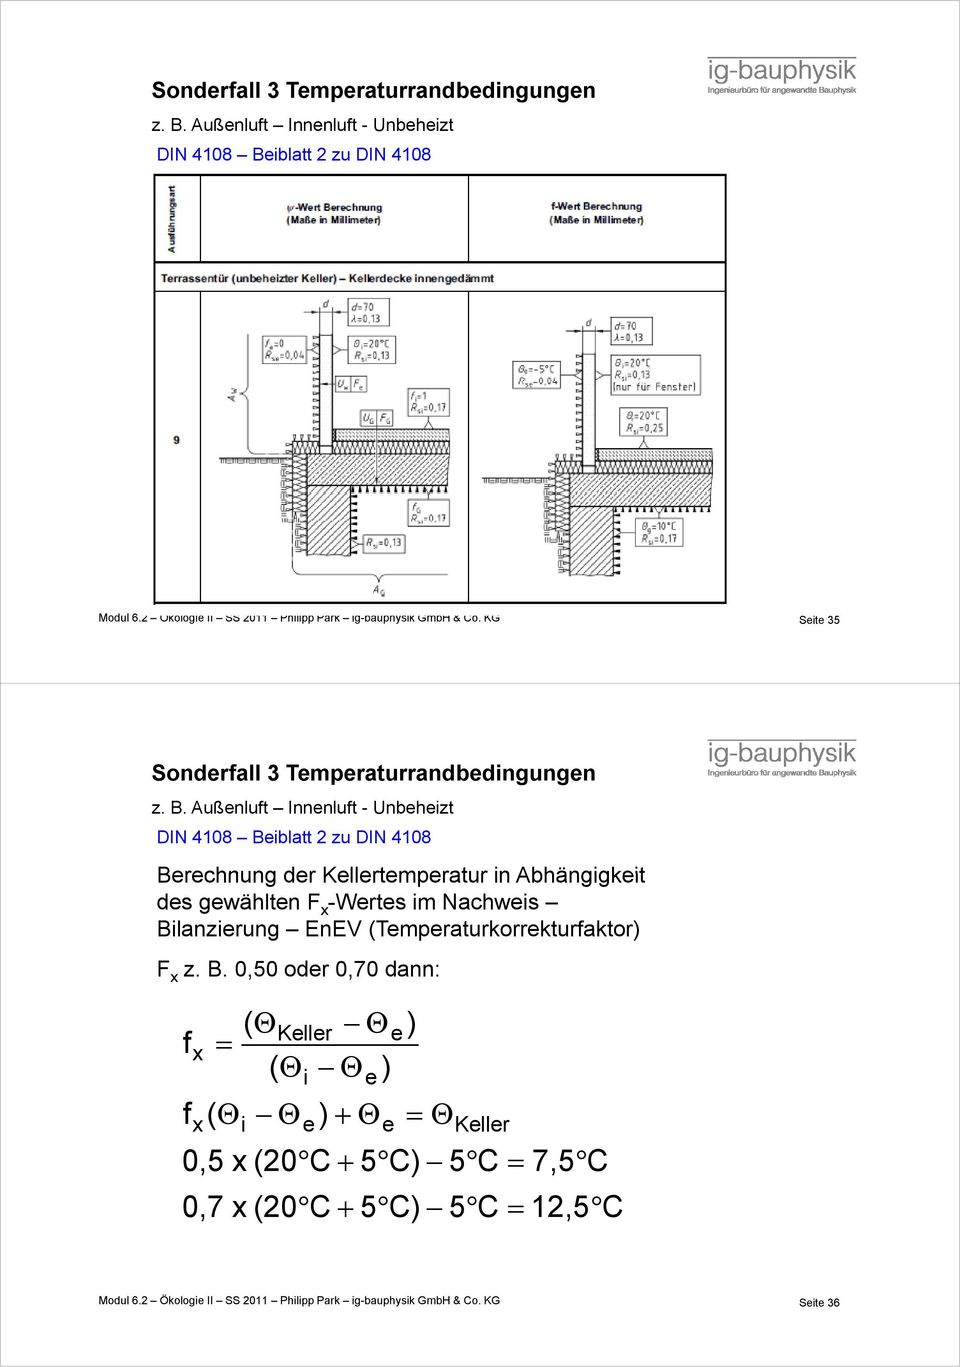 Außenluft Innenluft - Unbeheizt DIN 4108 Beiblatt 2 zu DIN 4108 Berechnung der Kellertemperatur in Abhängigkeit des gewählten F x -Wertes im Nachweis